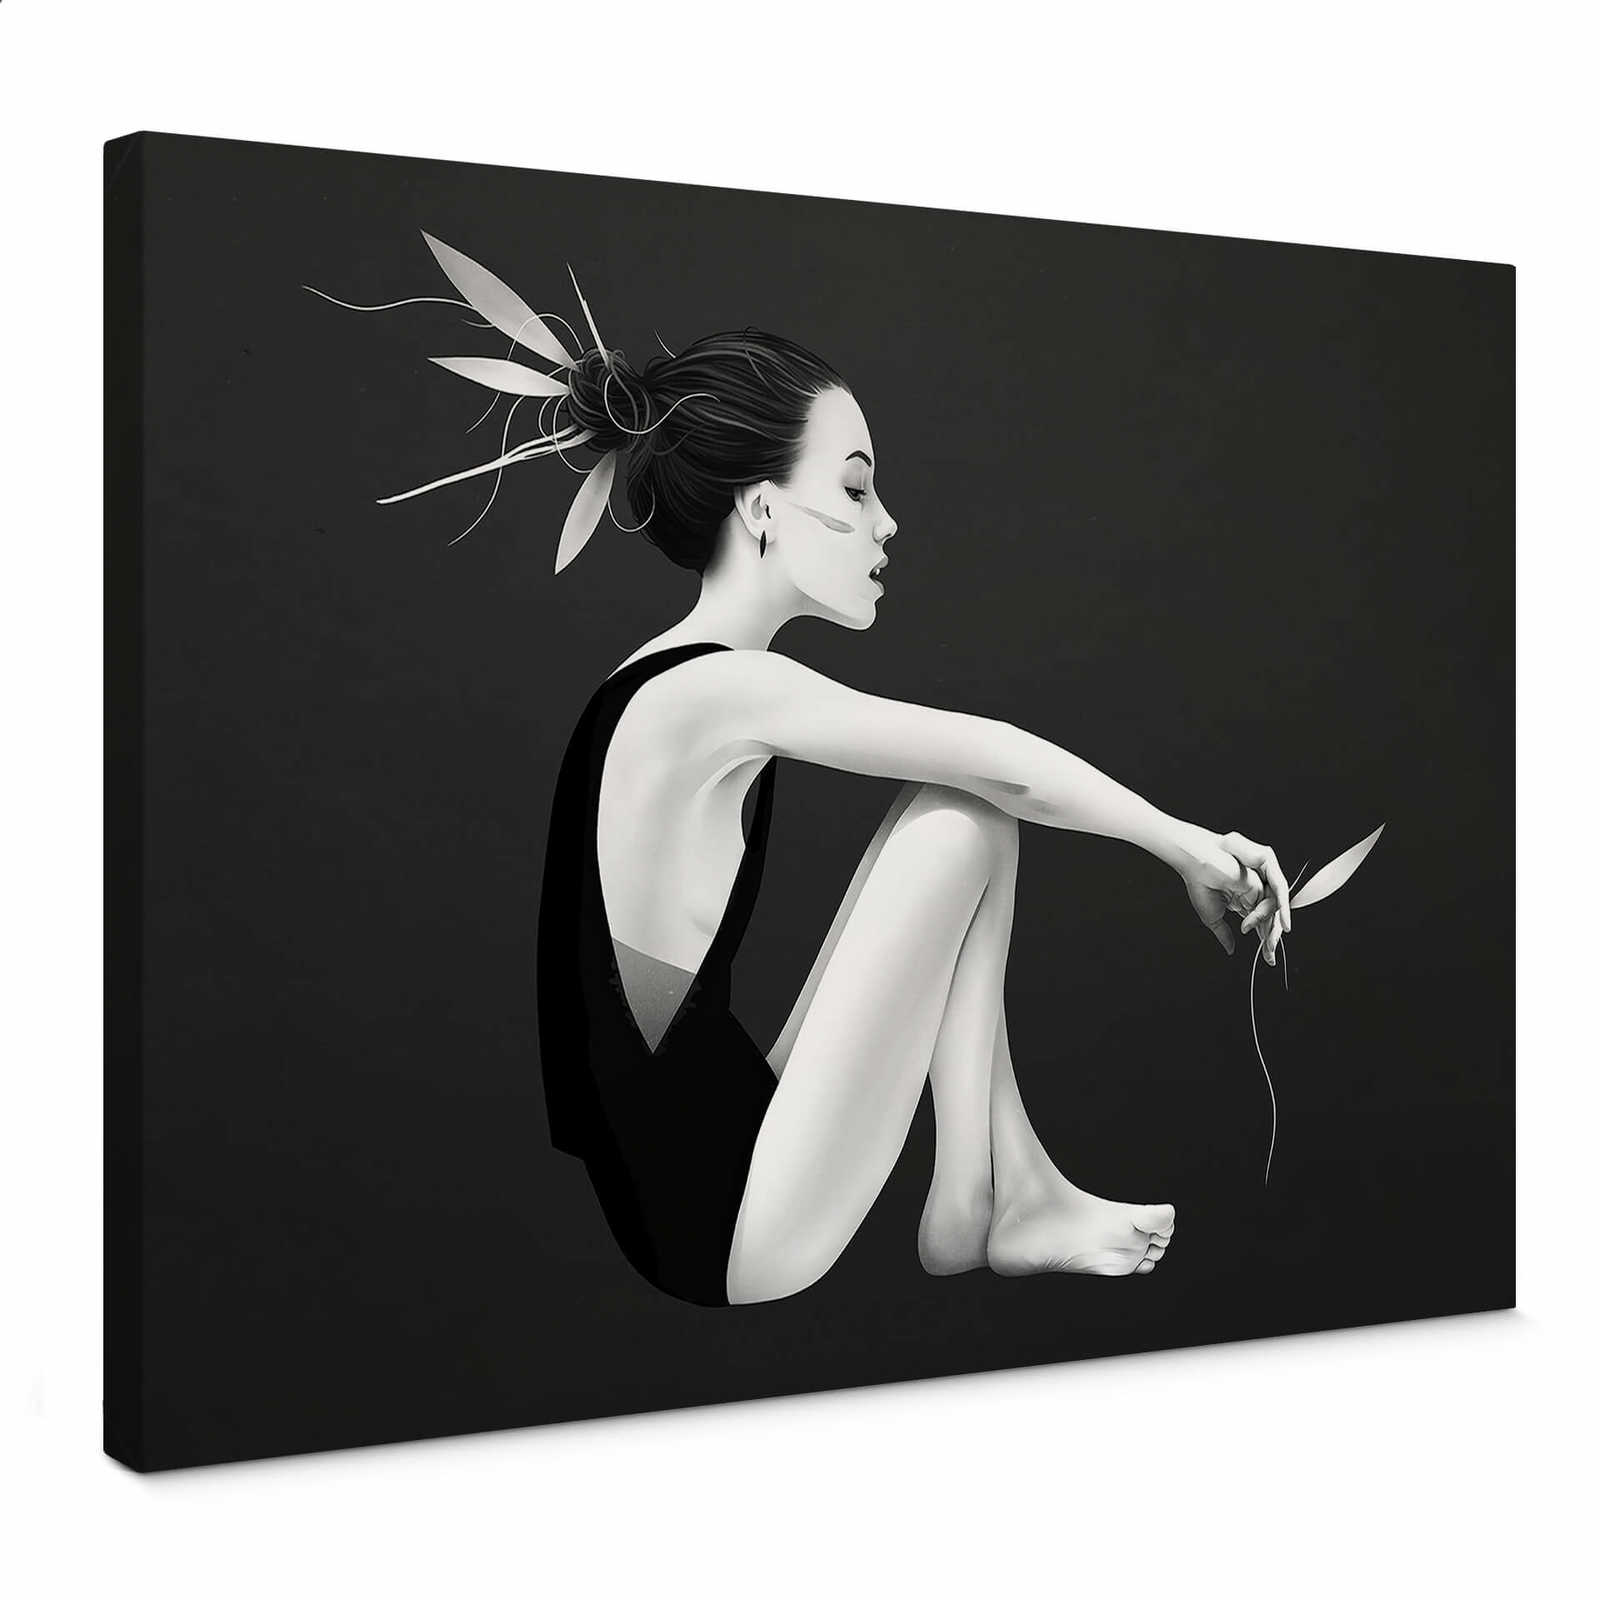             Schwarz-Weiß Leinwandbild "Skyling" mit Frauenfigur – 0,70 m x 0,50 m
        